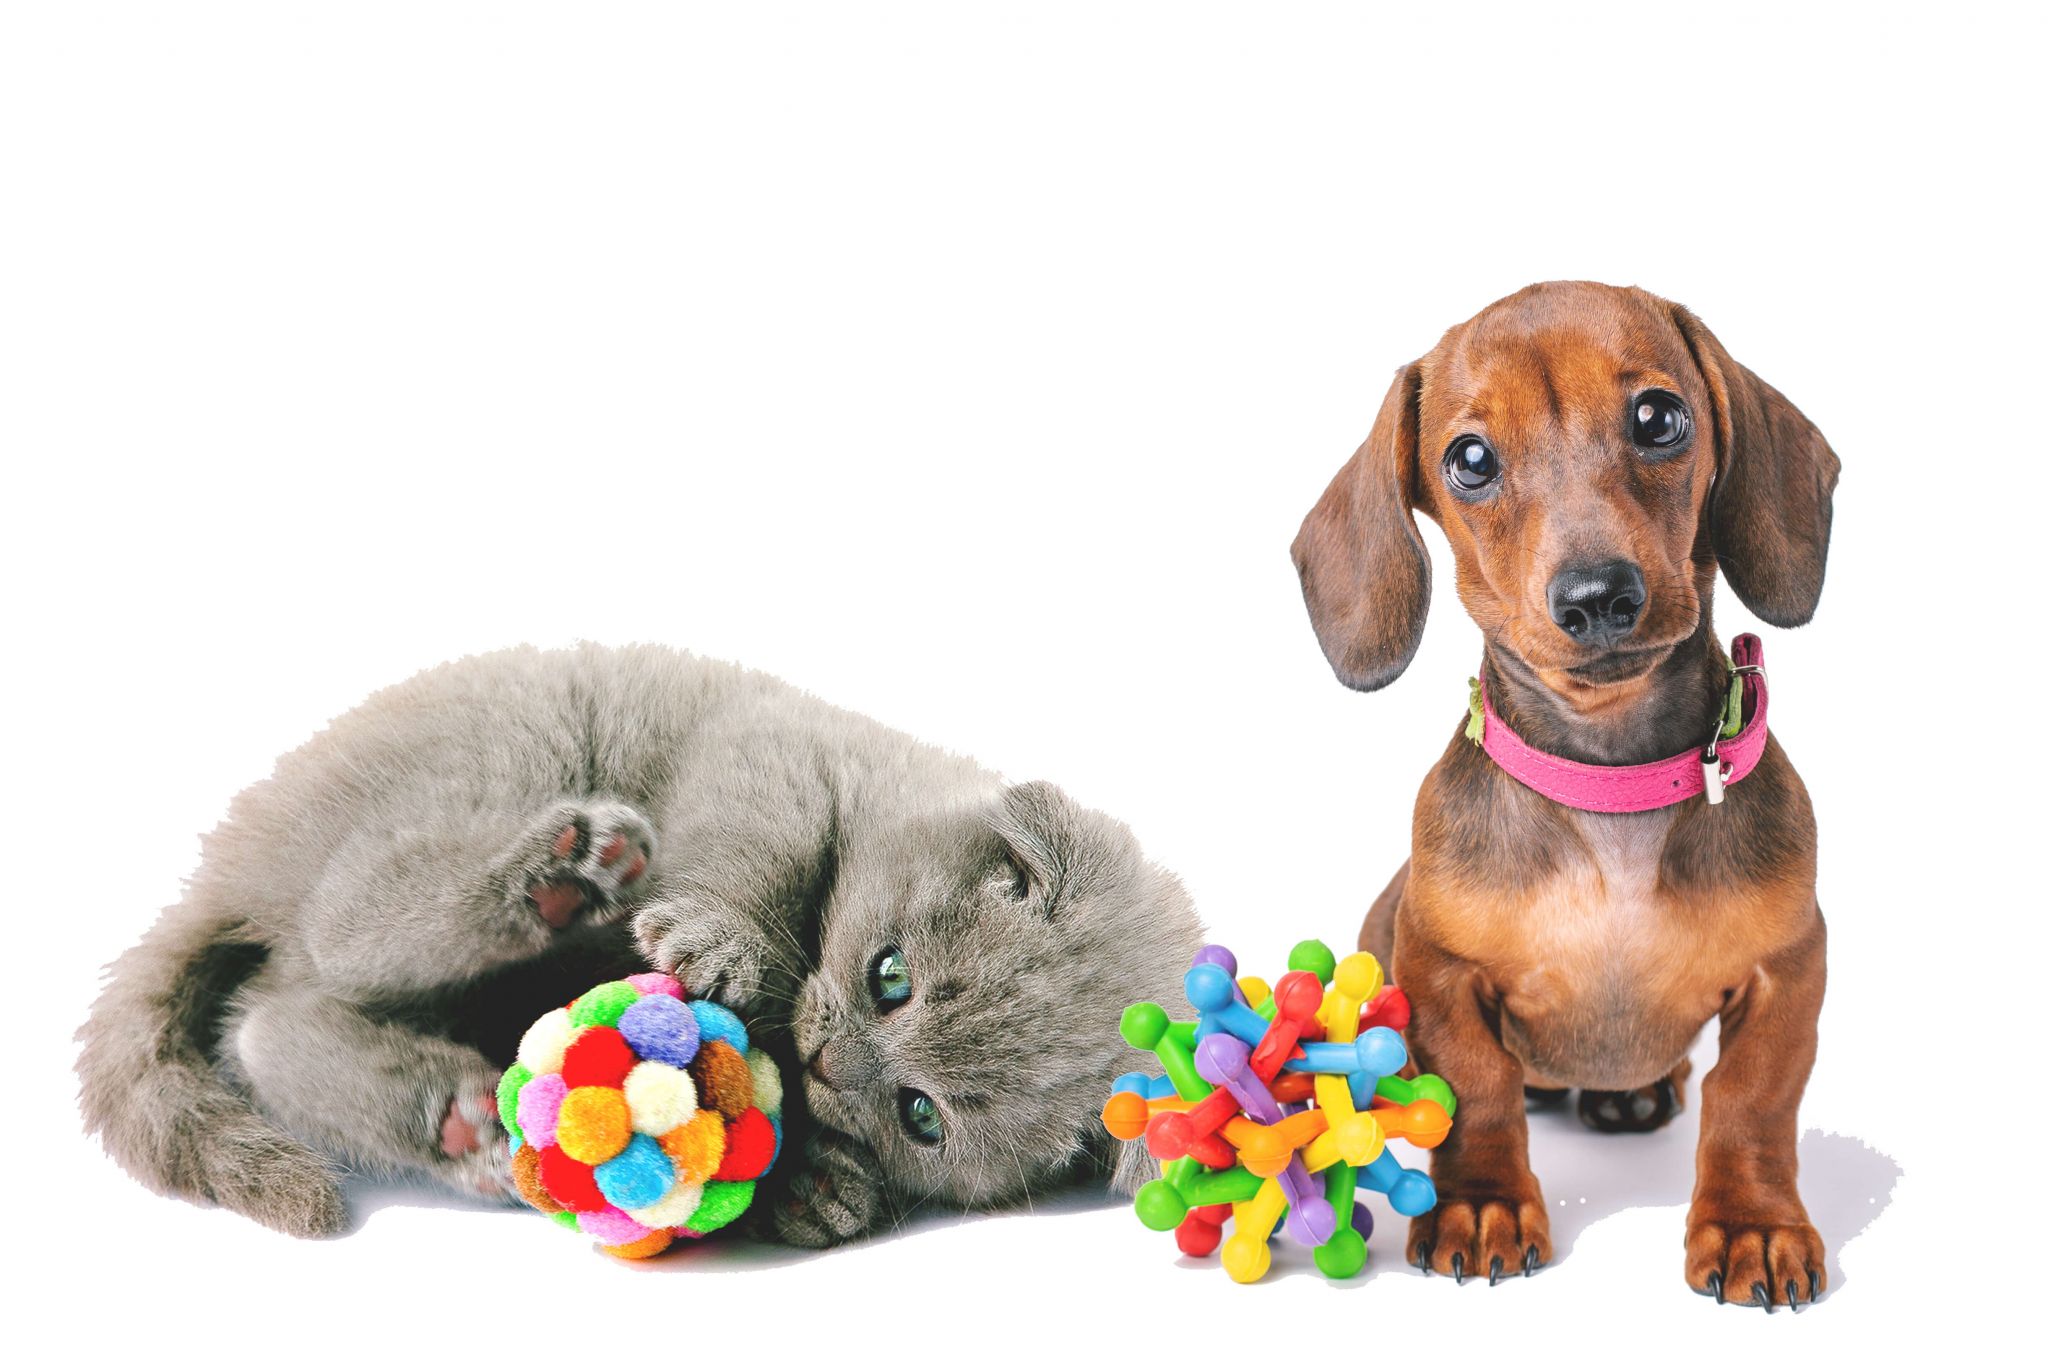 Diferencias entre los juguetes de perros y gatos - Aon